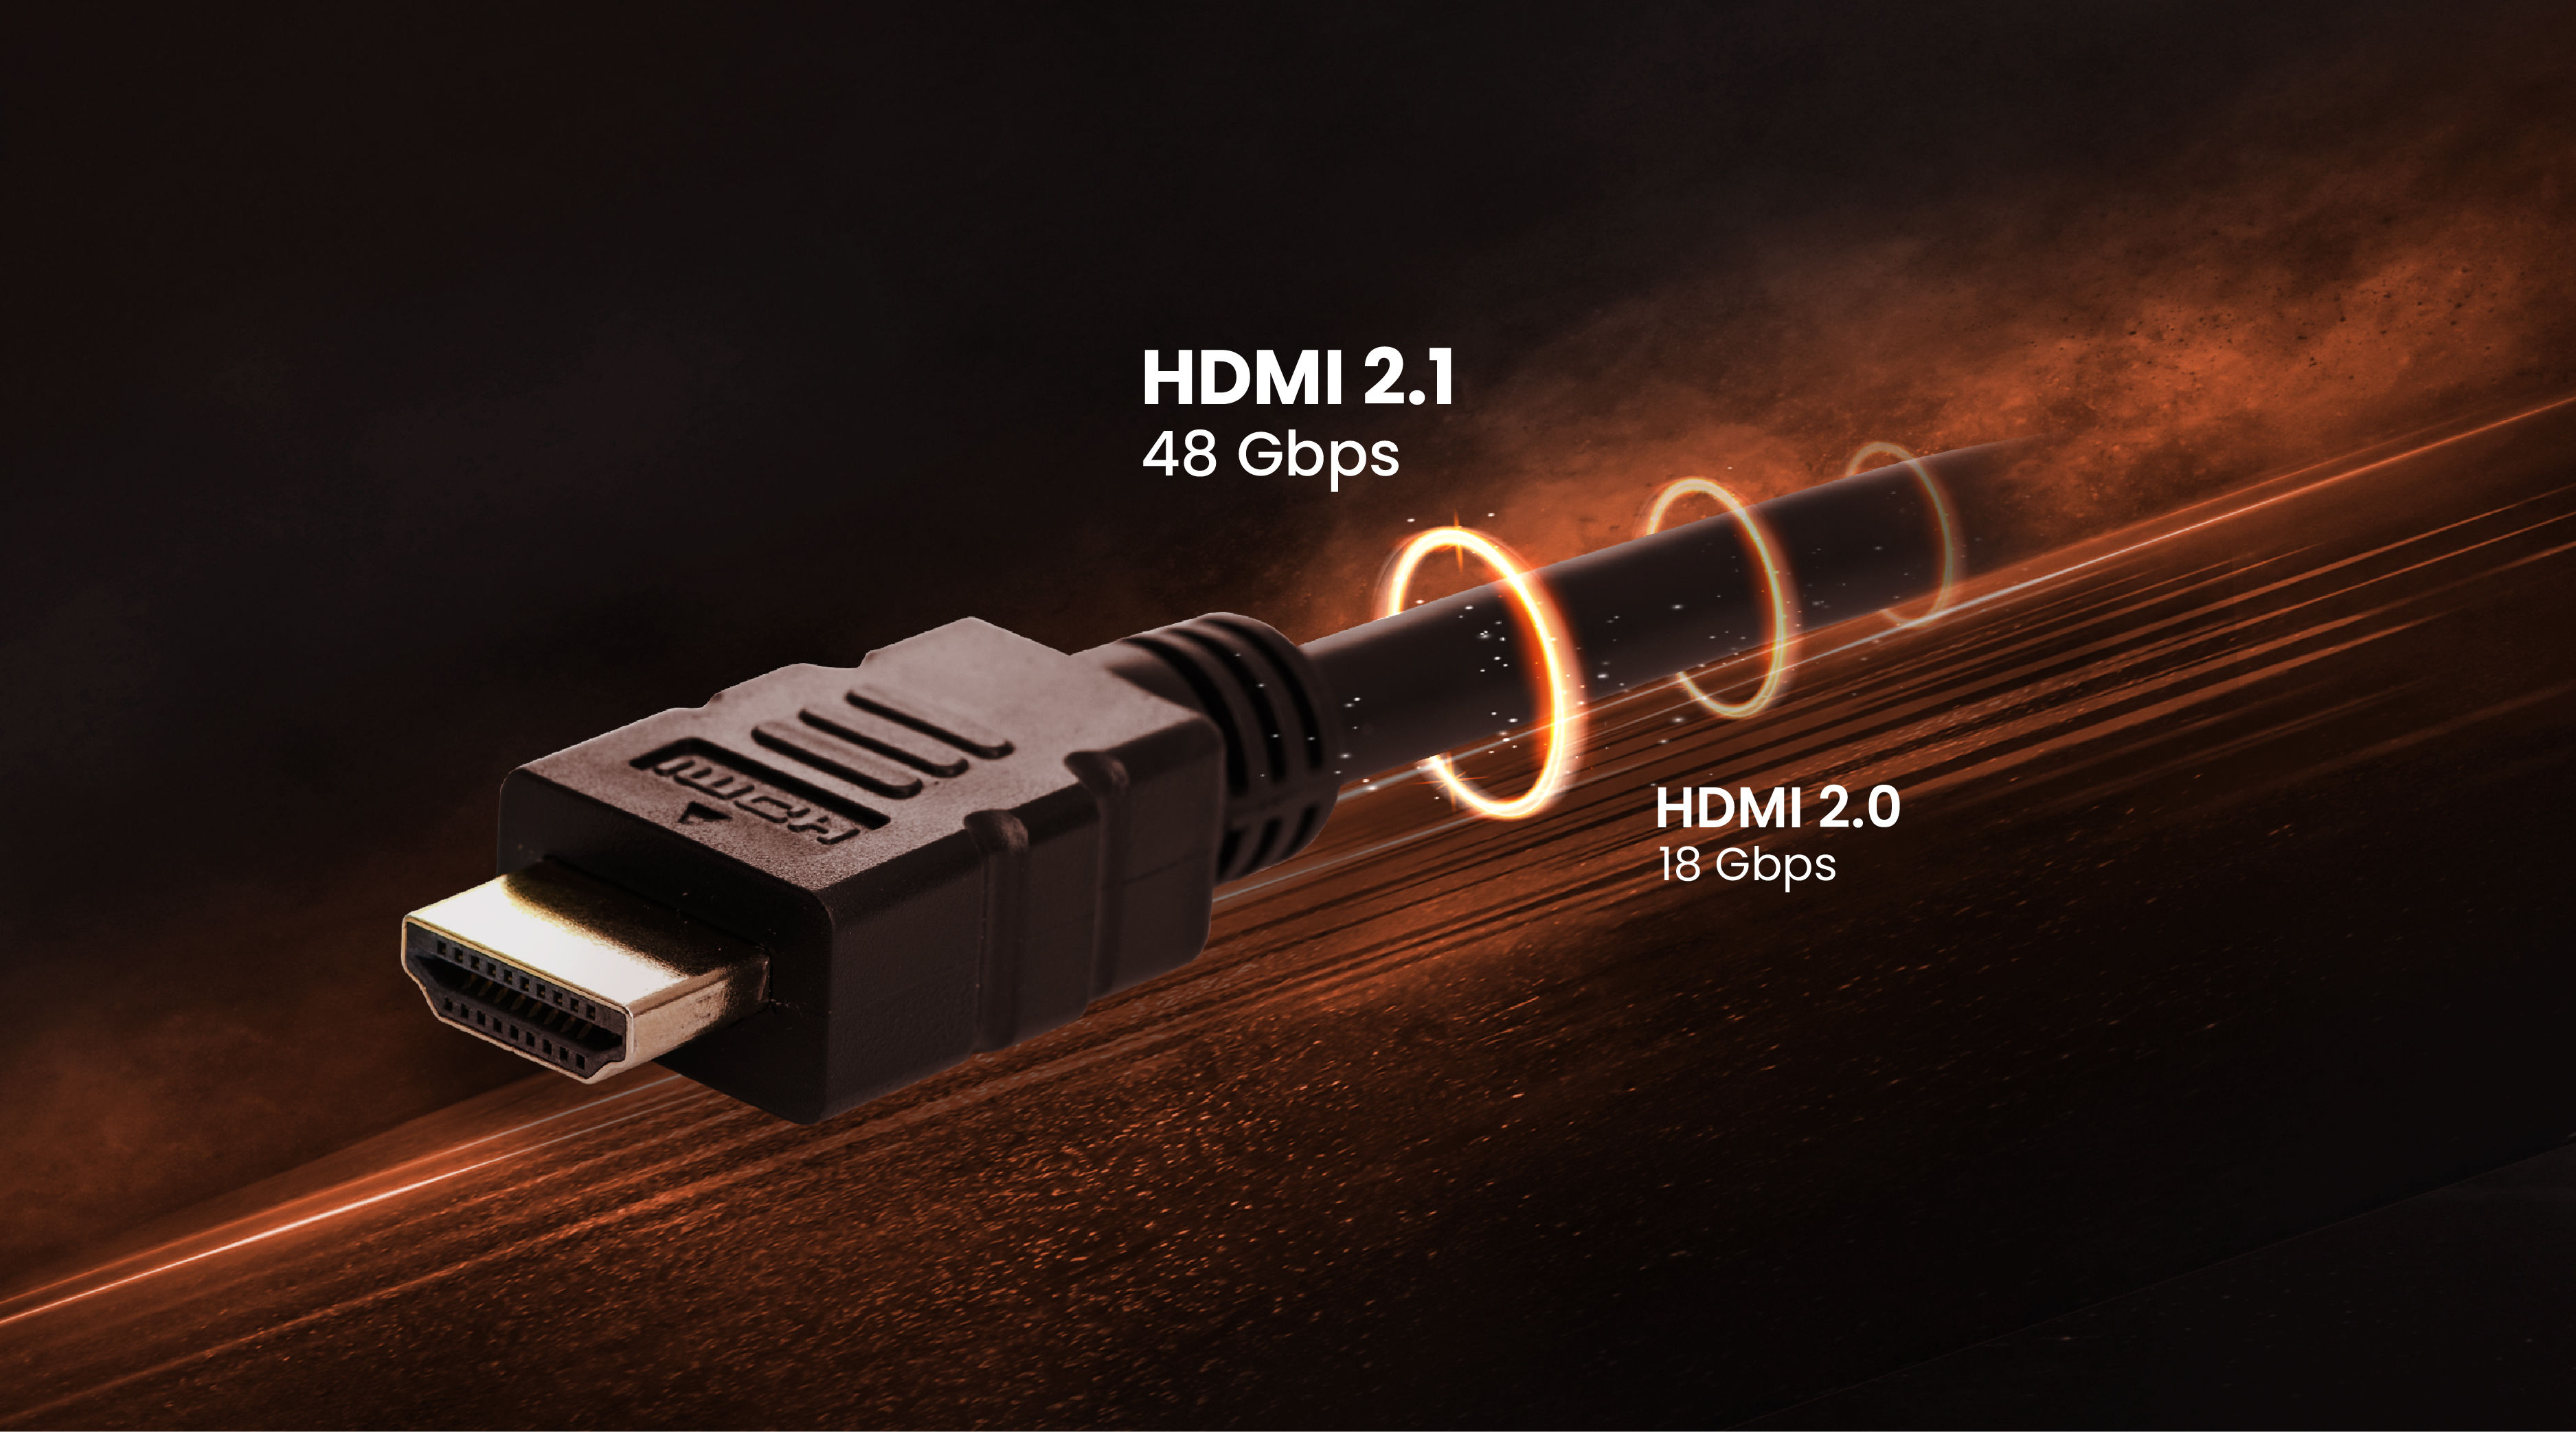 Cuándo necesito realmente HDMI 2.1 o es suficiente HDMI 2.0